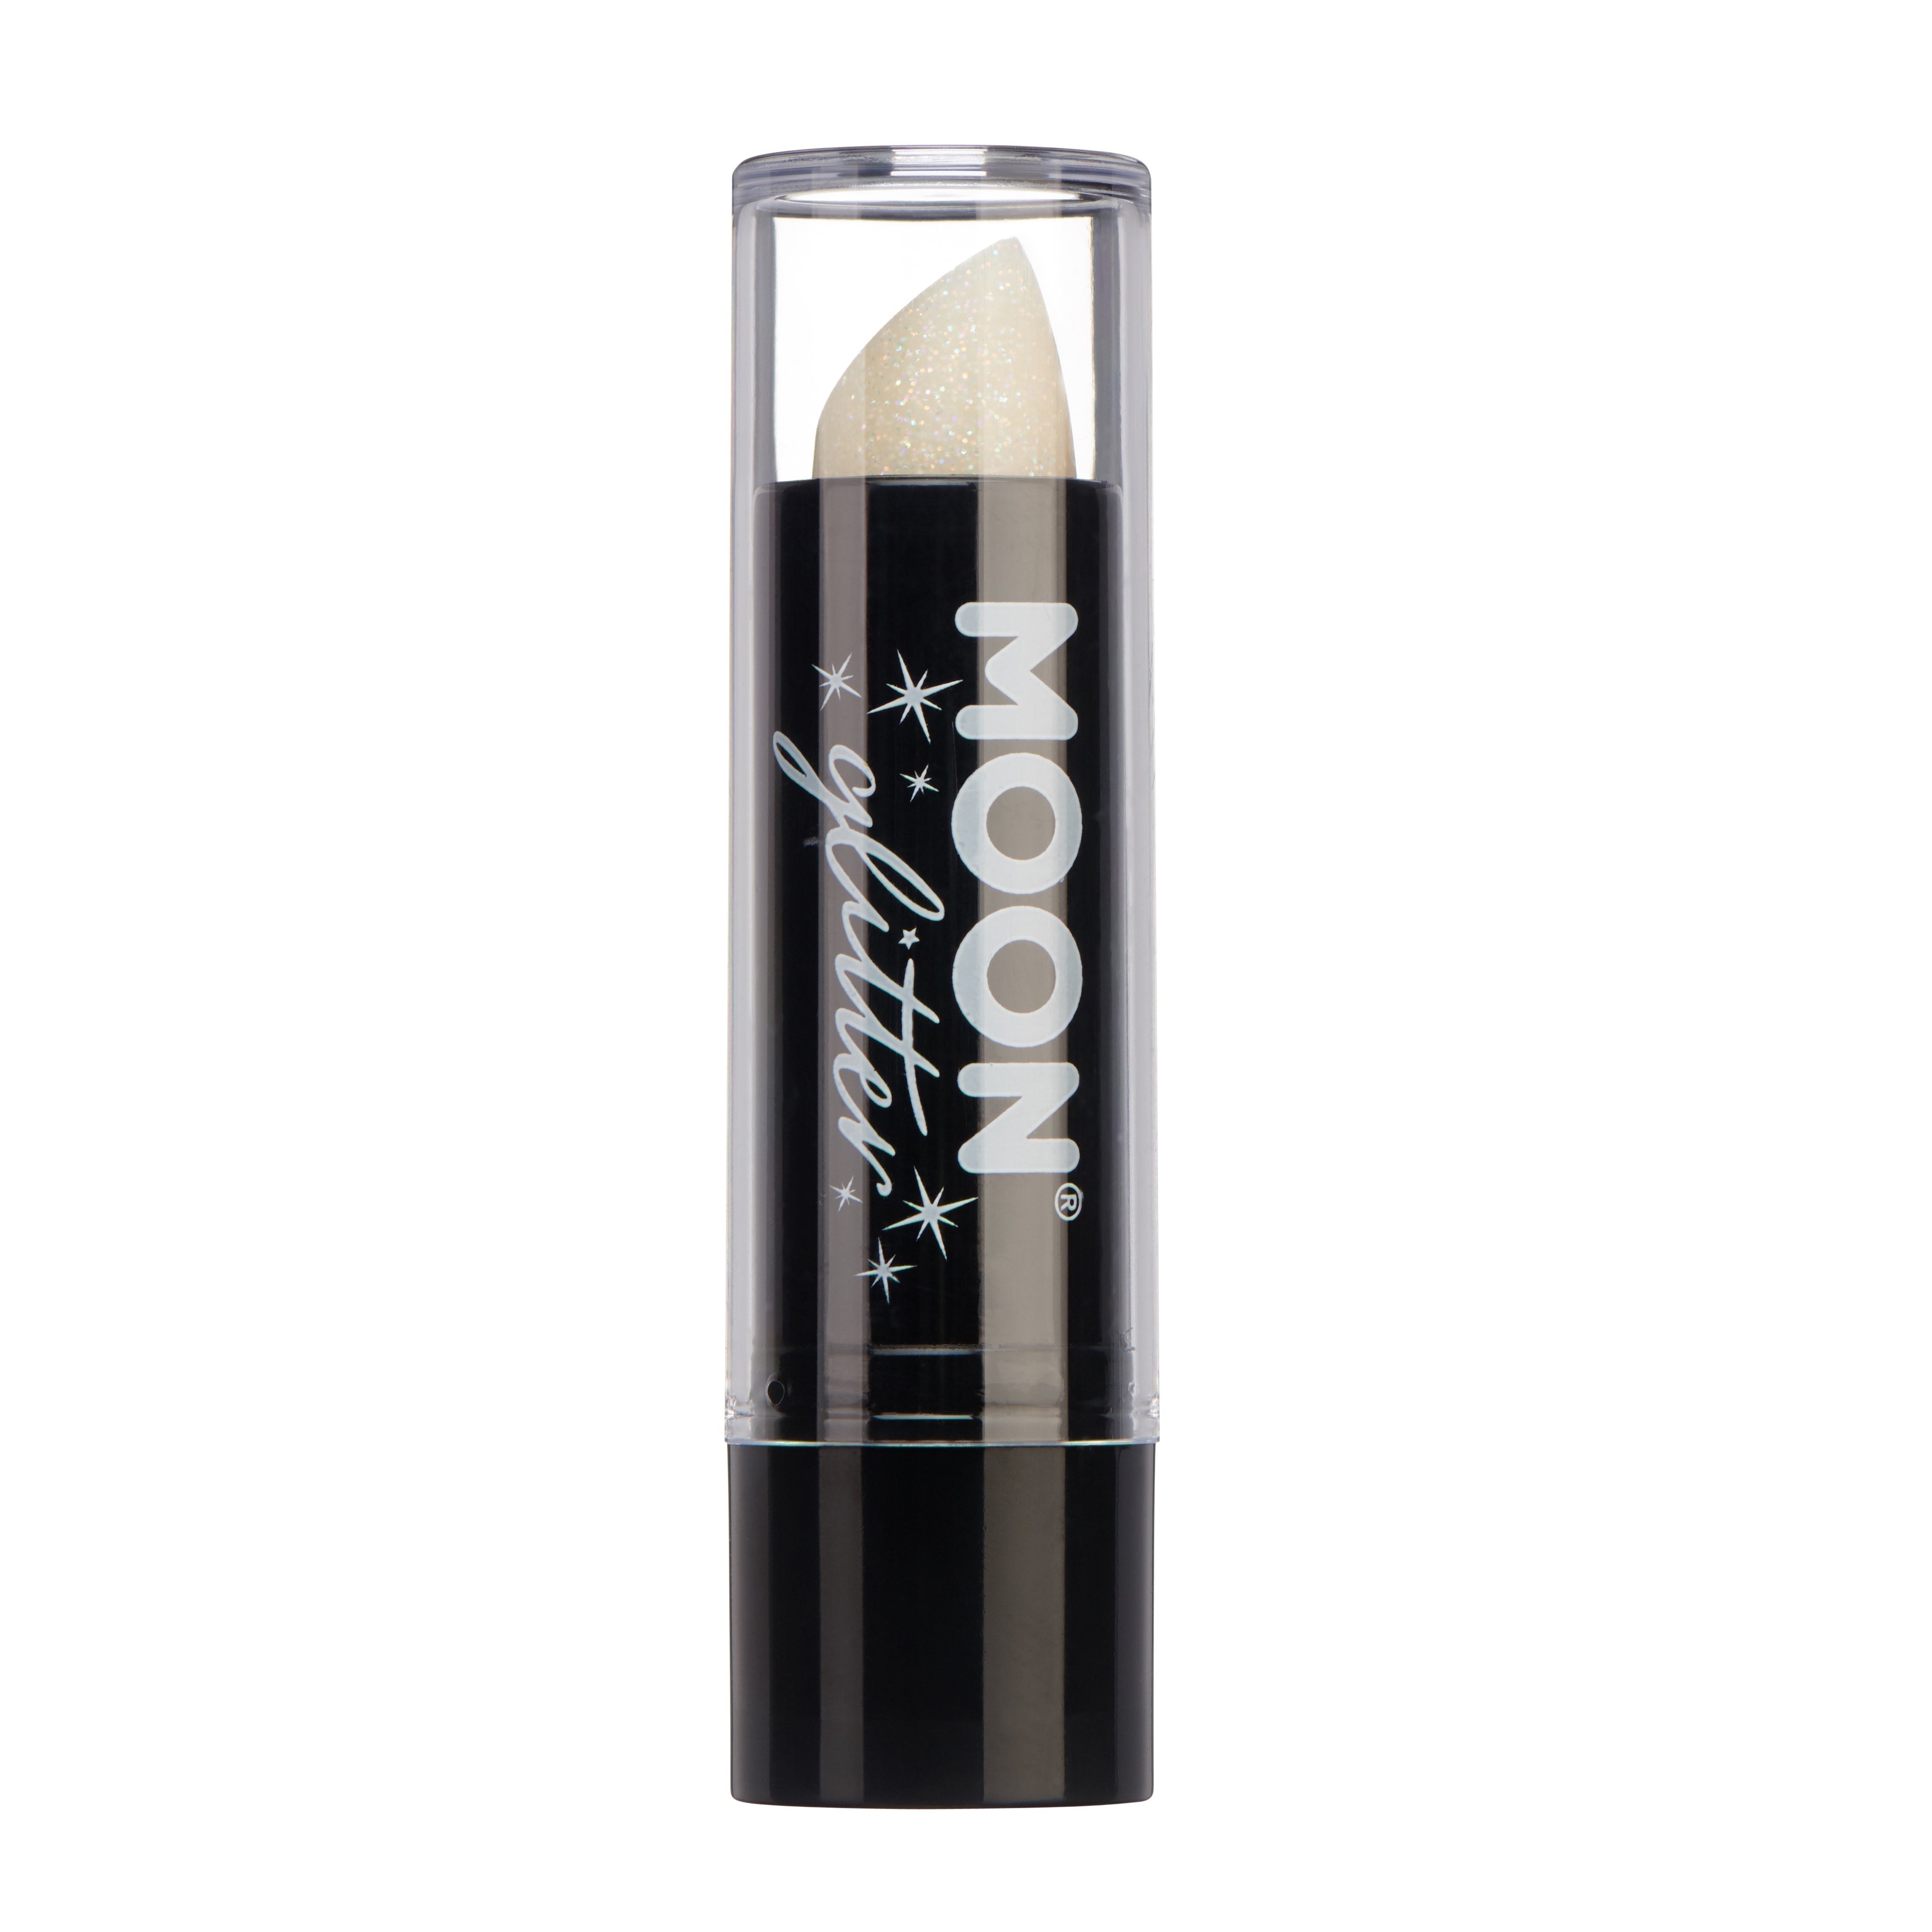 White - Iridescent Glitter Lipstick, 5g. Cosmetically certified, FDA & Health Canada compliant and cruelty free.